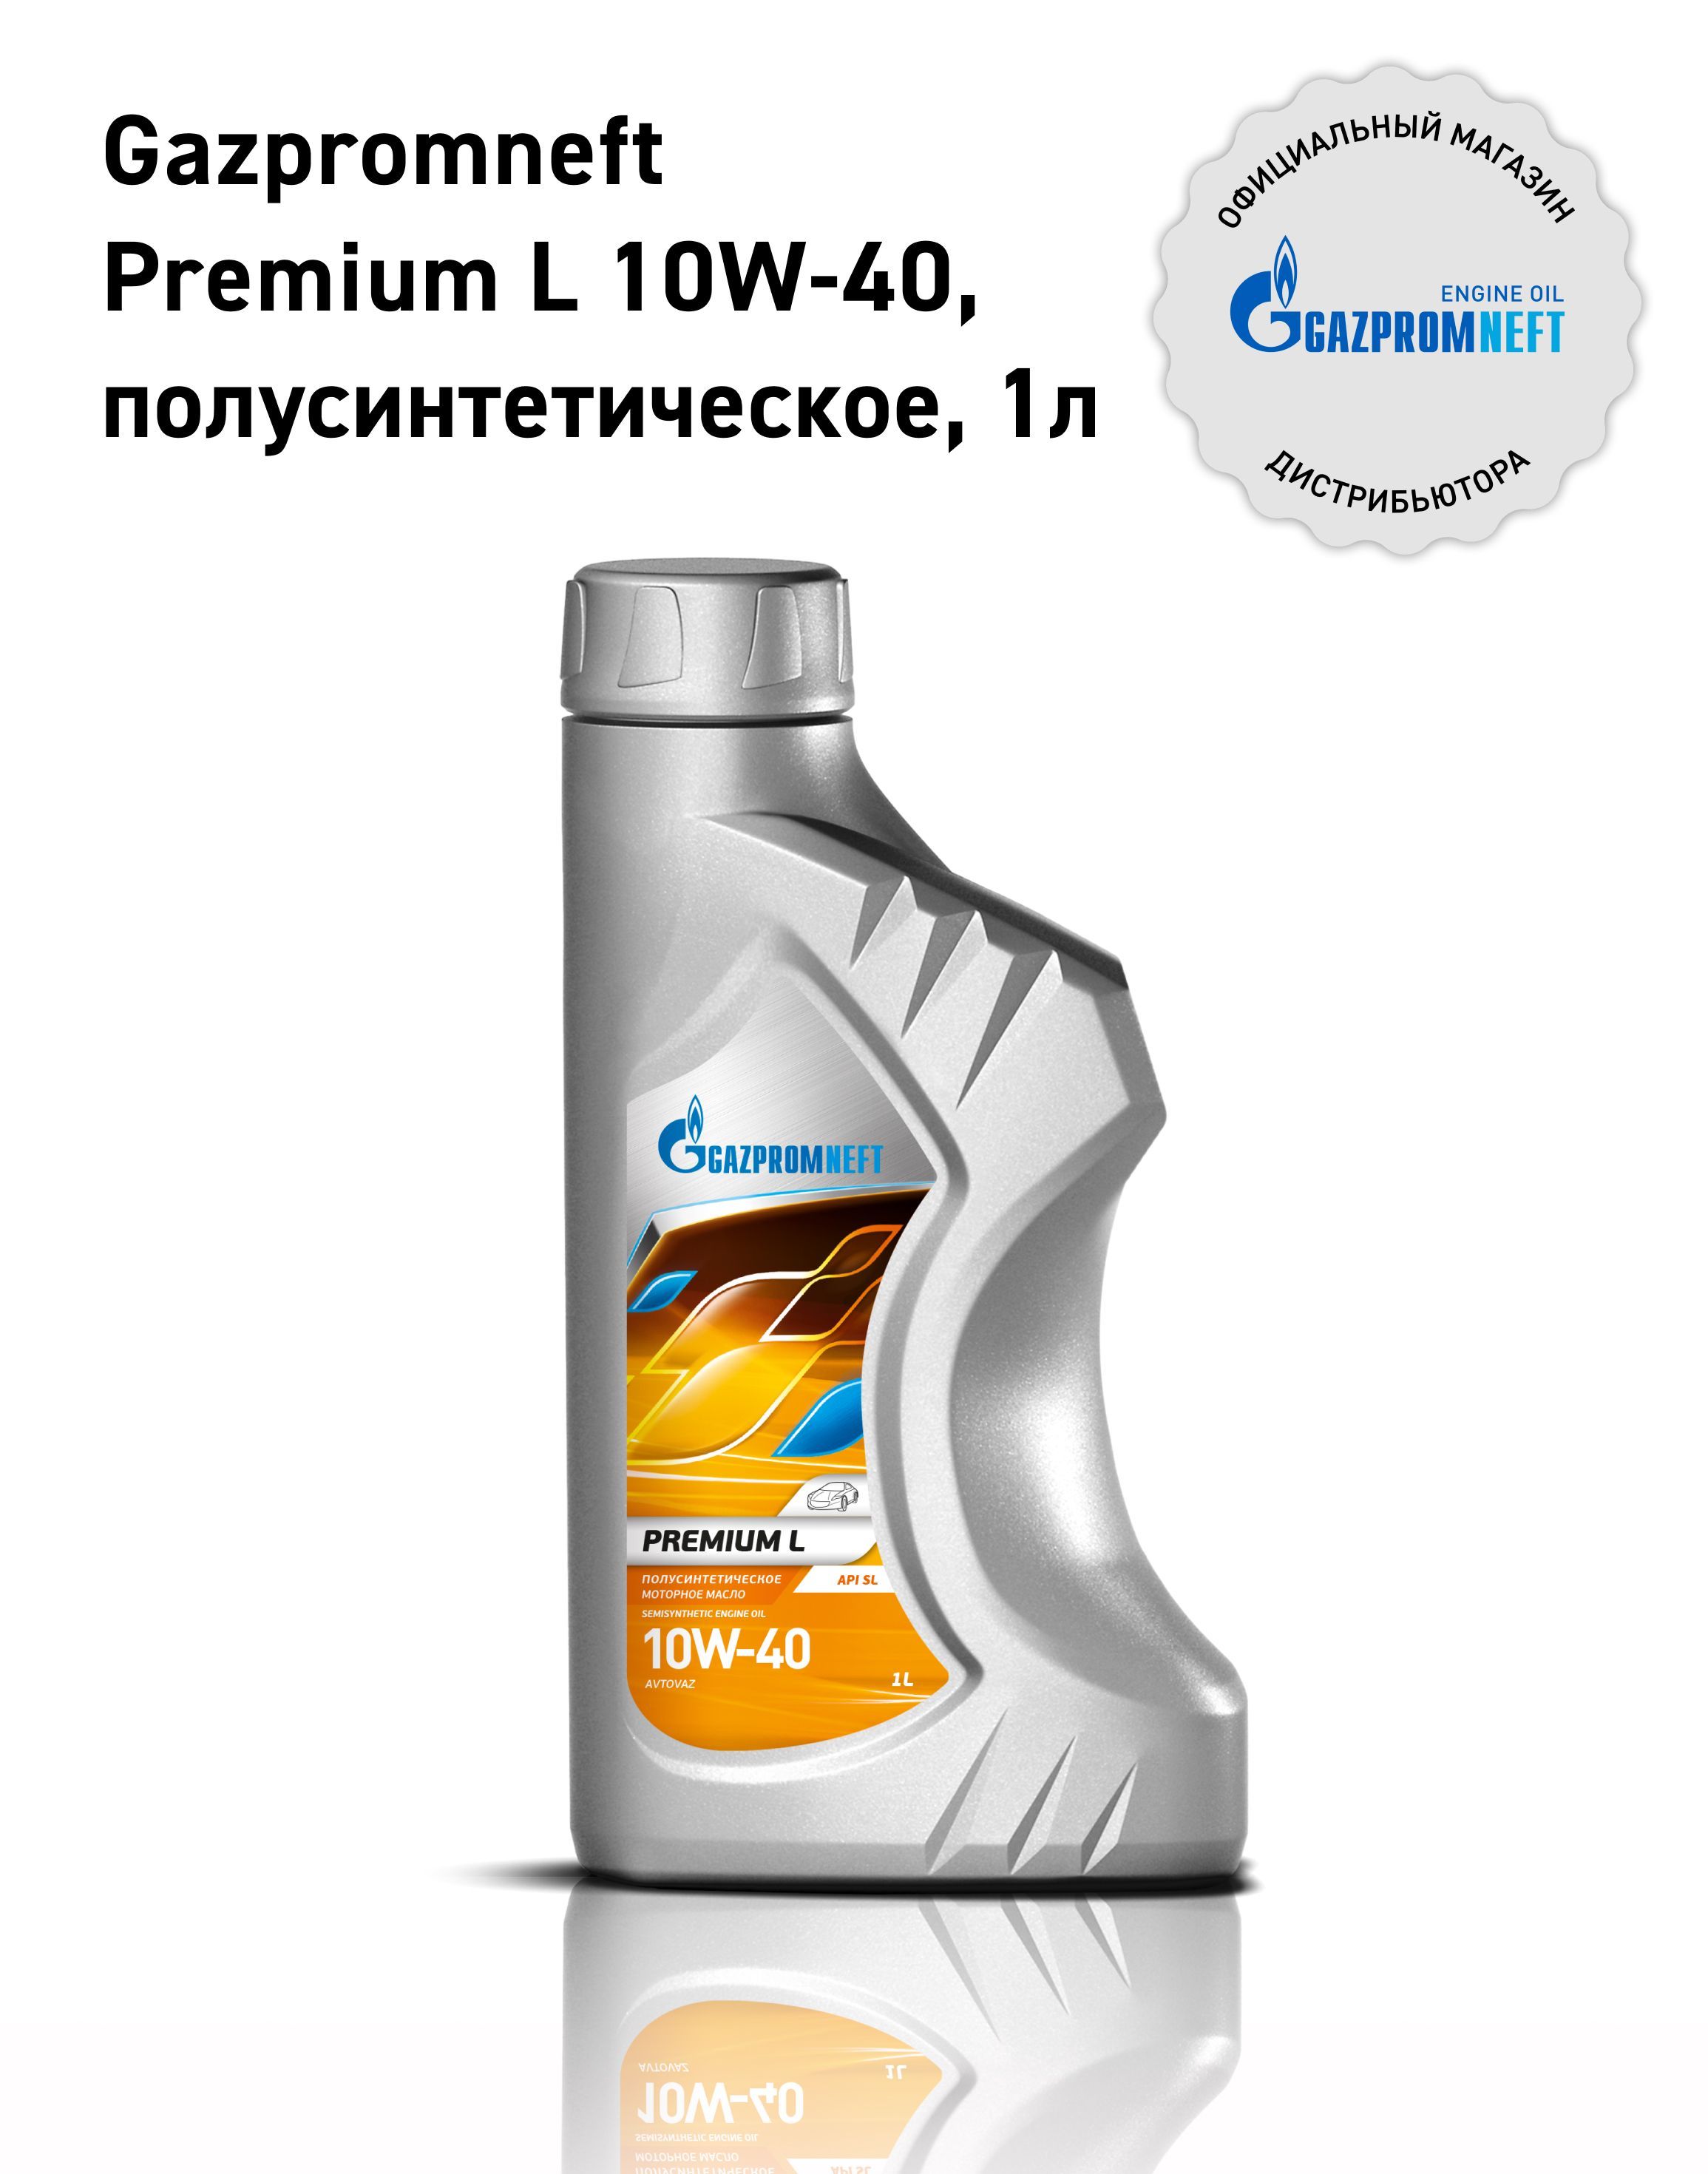 Gazpromneftpremiuml10W-40,Масломоторное,Полусинтетическое,1л